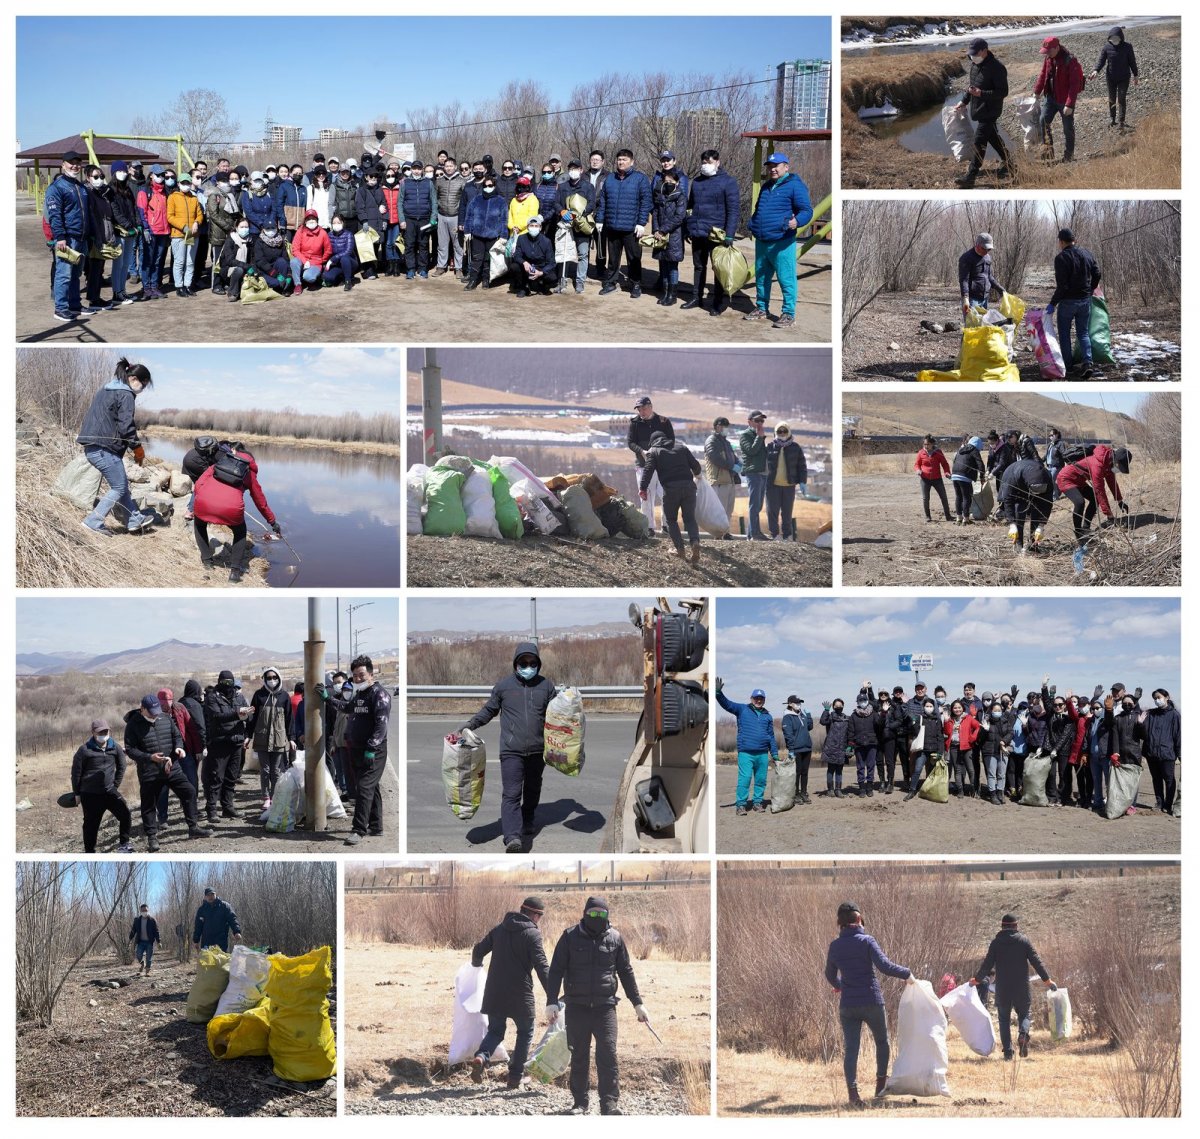 ТӨРИЙН БАНК: Монгол орон даяар 6000 га газар цэвэрлэлээ